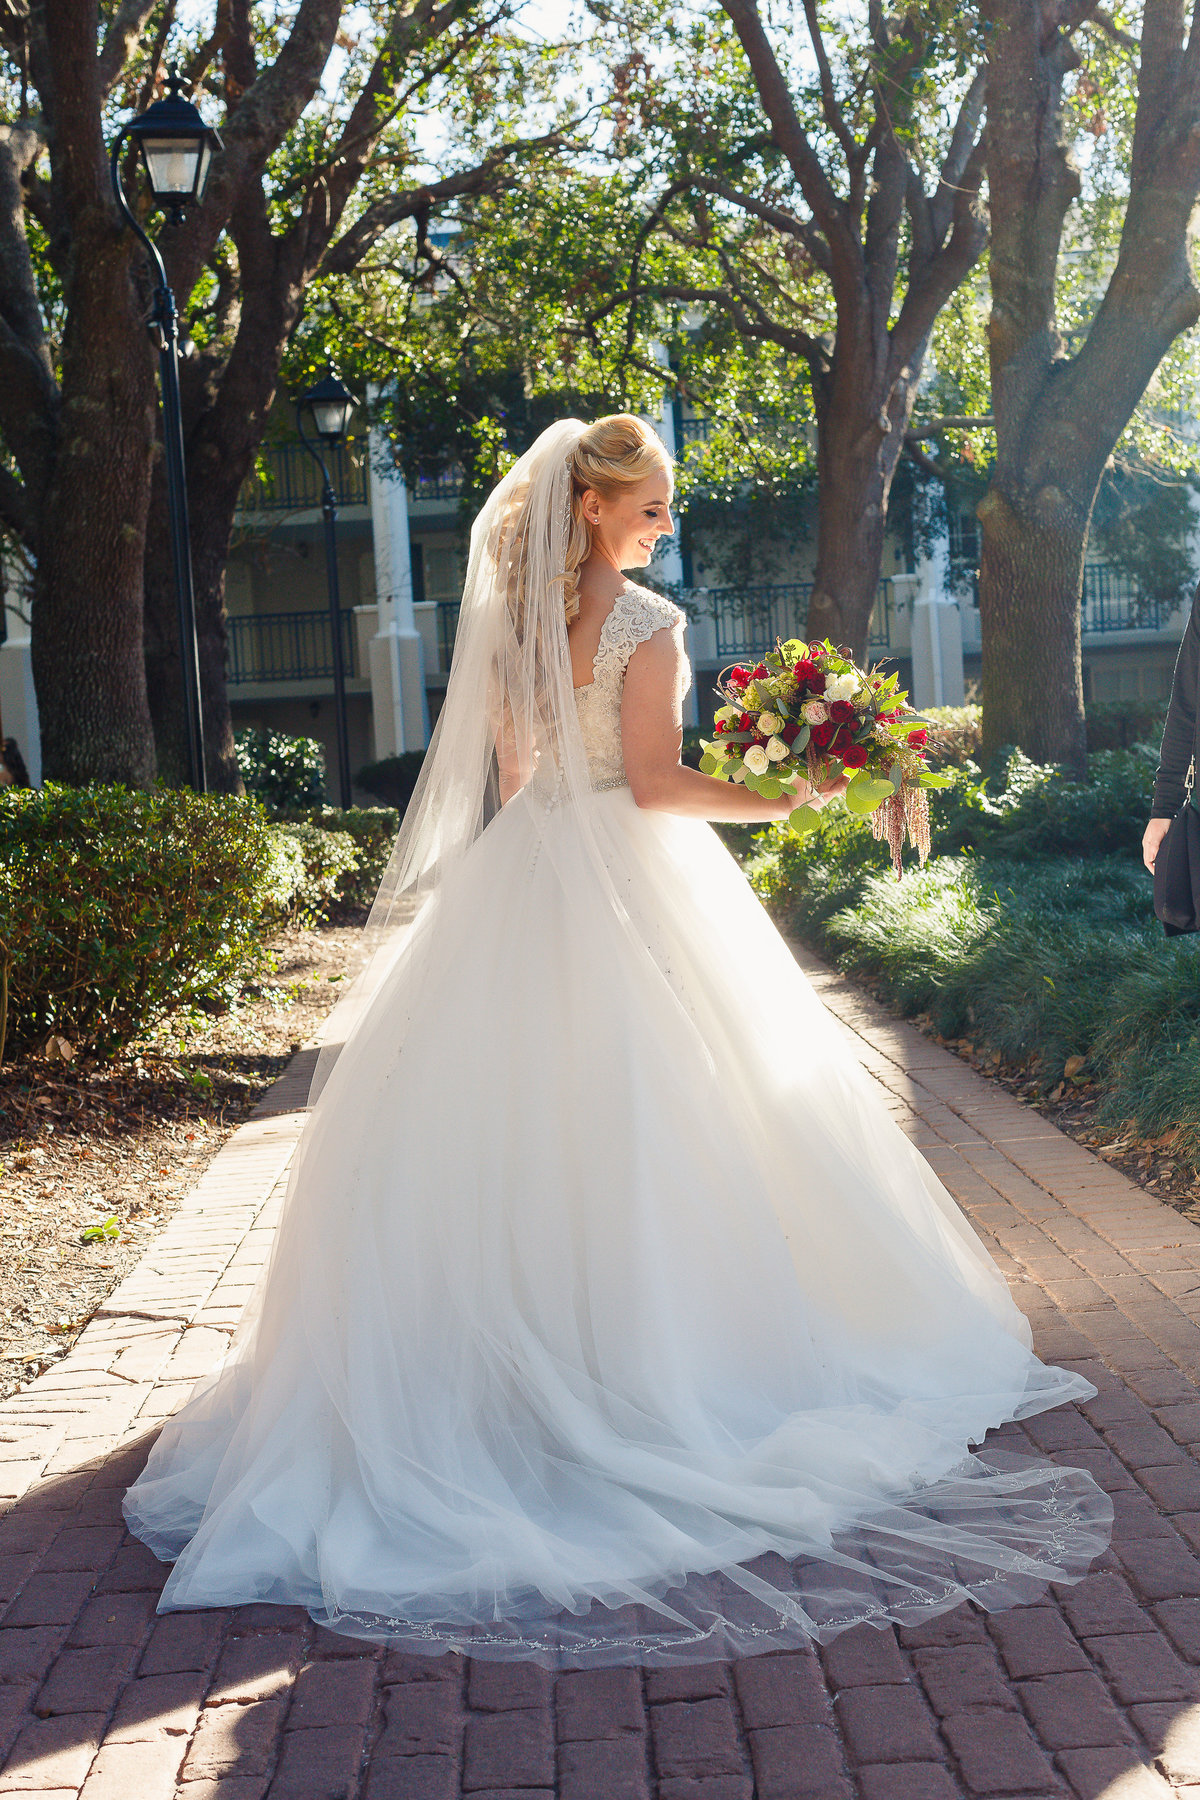 A Bride at a Disney Port Orleans Wedding Looks Back Over Her Shoulder